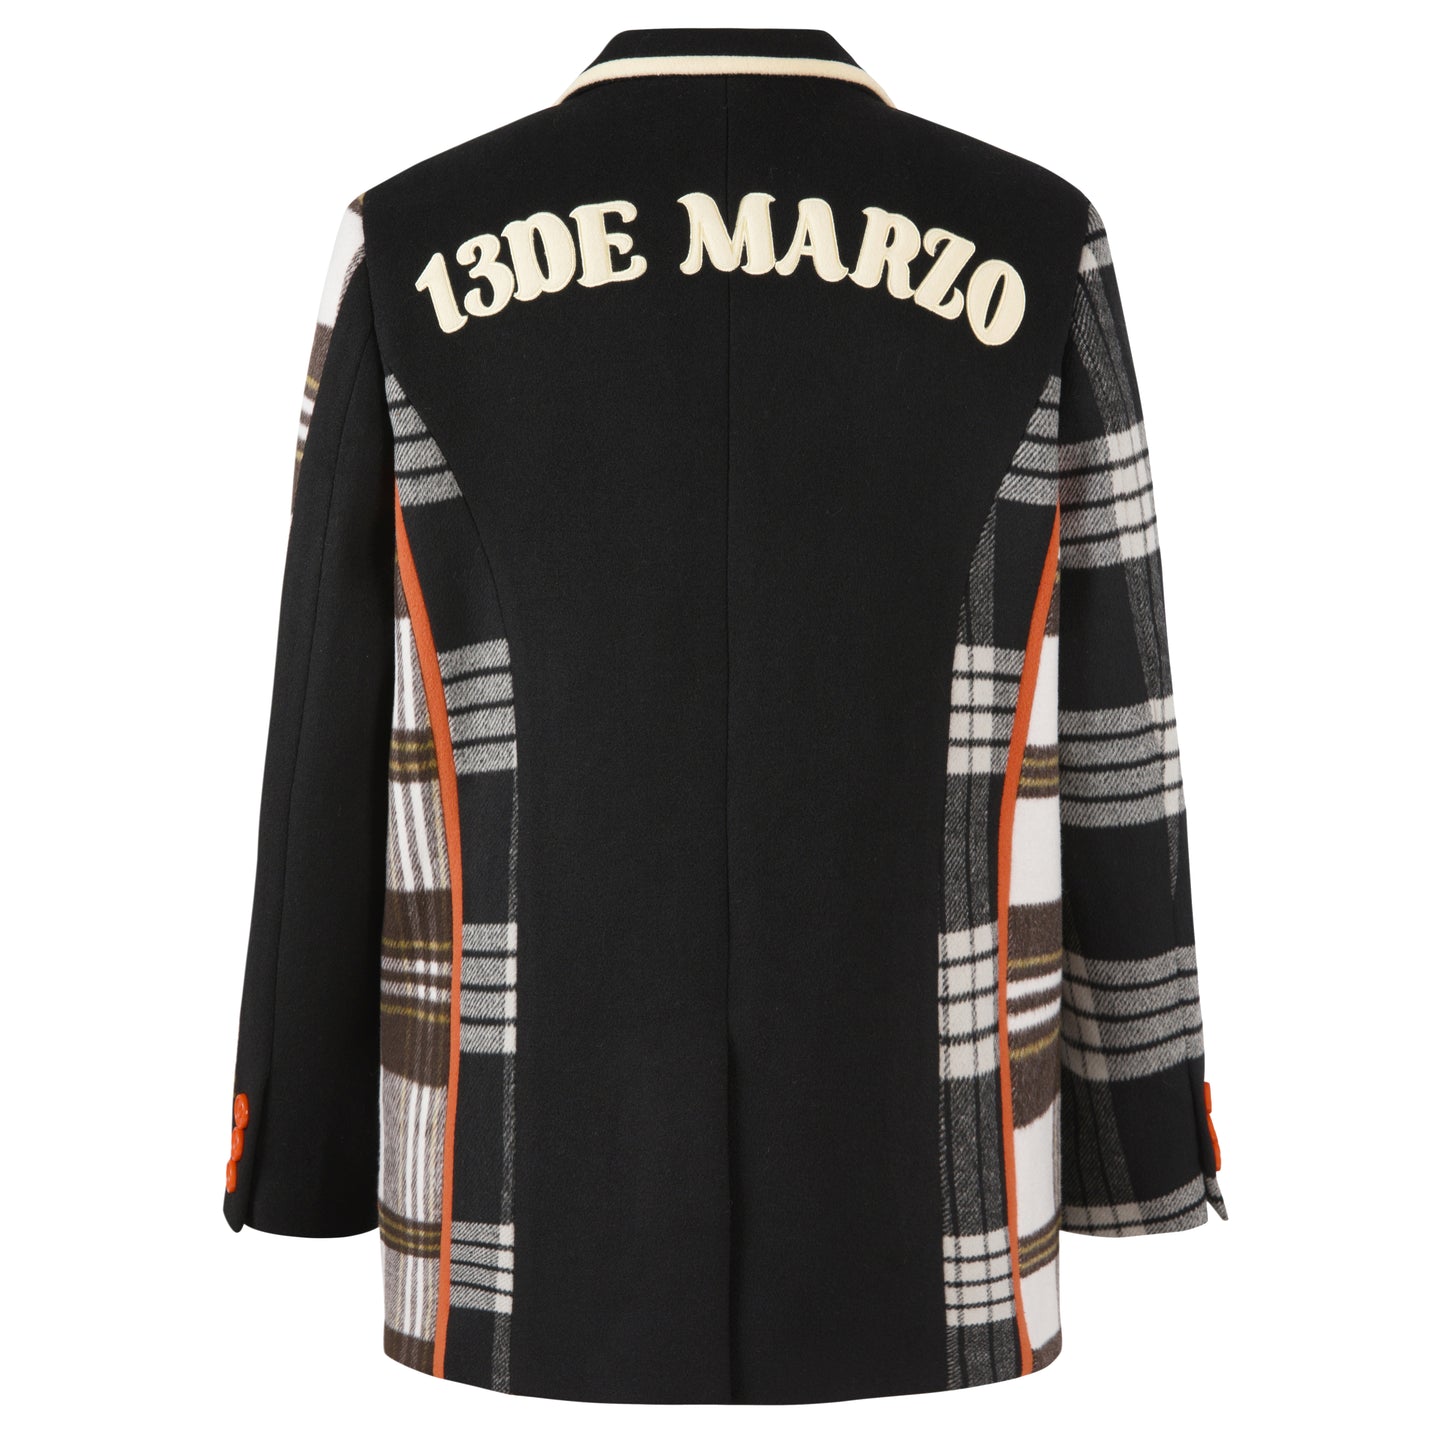 13DE MARZO Retro Bear Tweed Patch Suit